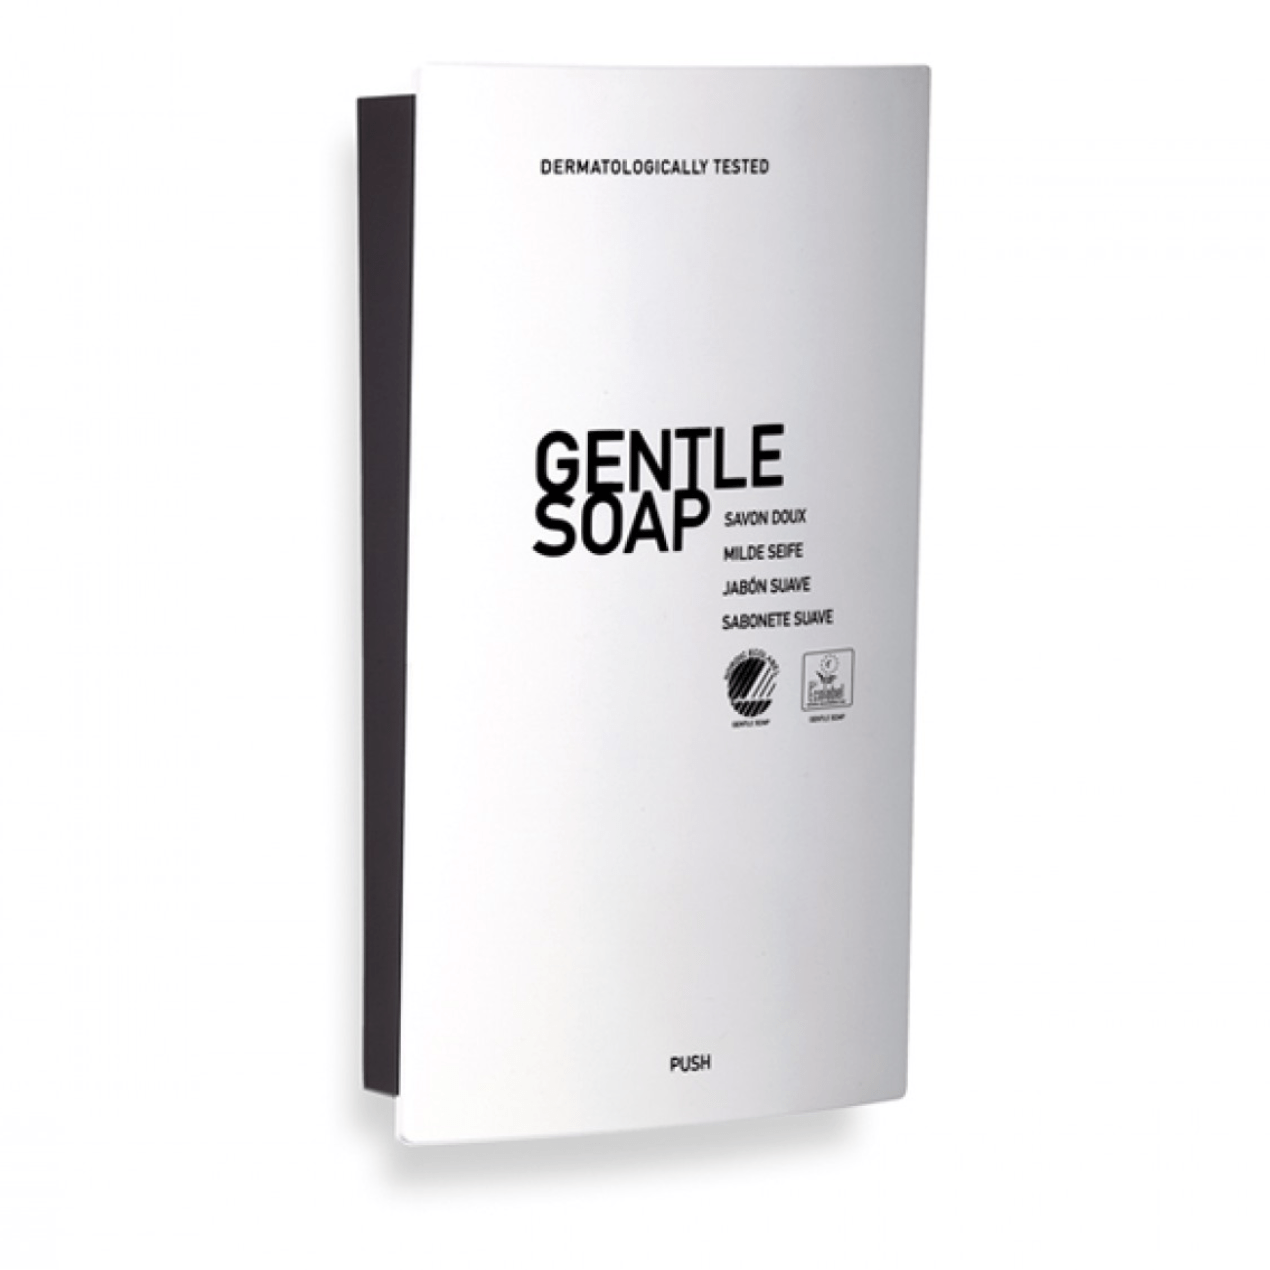 Gentle soap